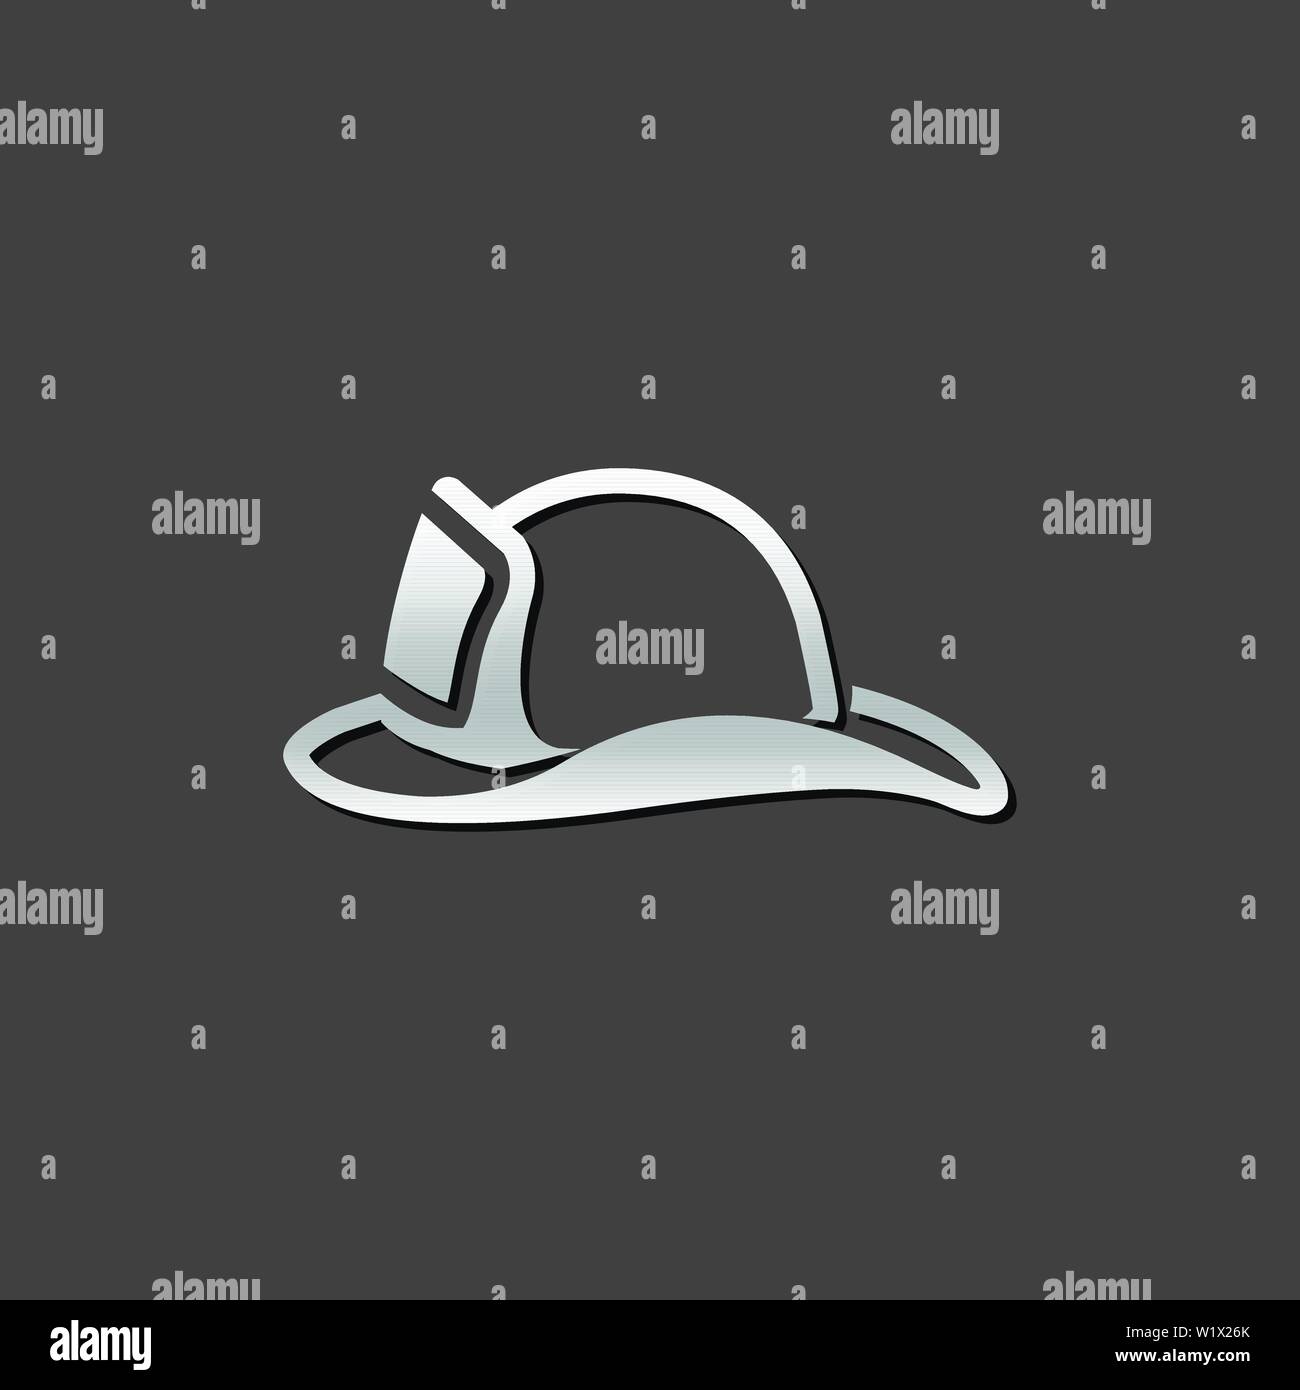 Fireman hat icon in metallic grey color style. Helmet firefighter equipment Stock Vector